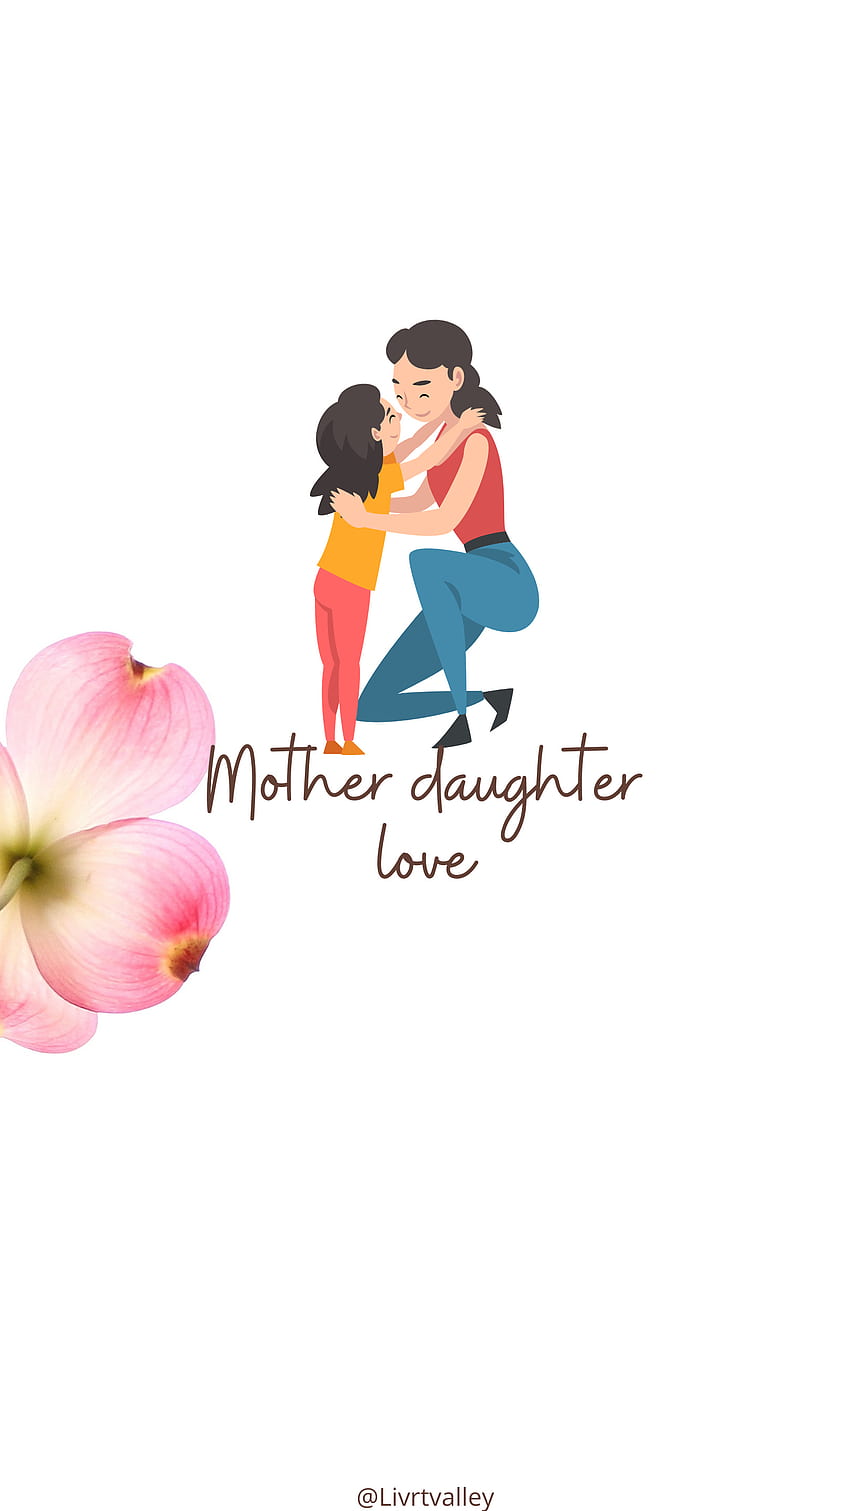 어머니의 날, loyoumom, 어머니, motherdaughterlove, sweetfamily, 엄마, mothersday, 존경, 가족, momlove HD 전화 배경 화면